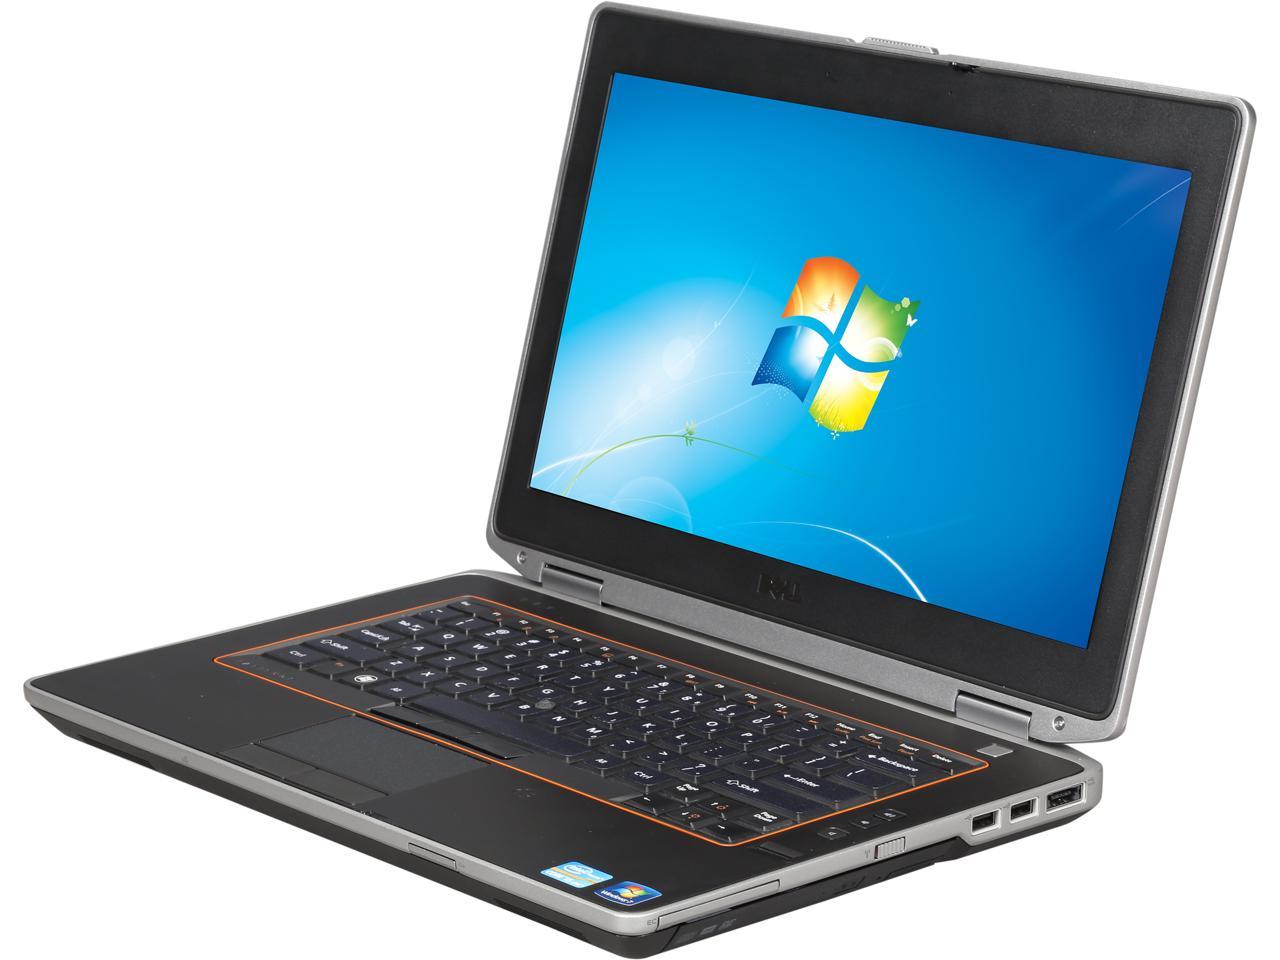 DELL Grade A Laptop E6420 Intel Core i5 2.50 GHz 4 GB Memory 128 GB SSD Intel HD Graphics 3000 14.0" Windows 10 Pro 64-Bit